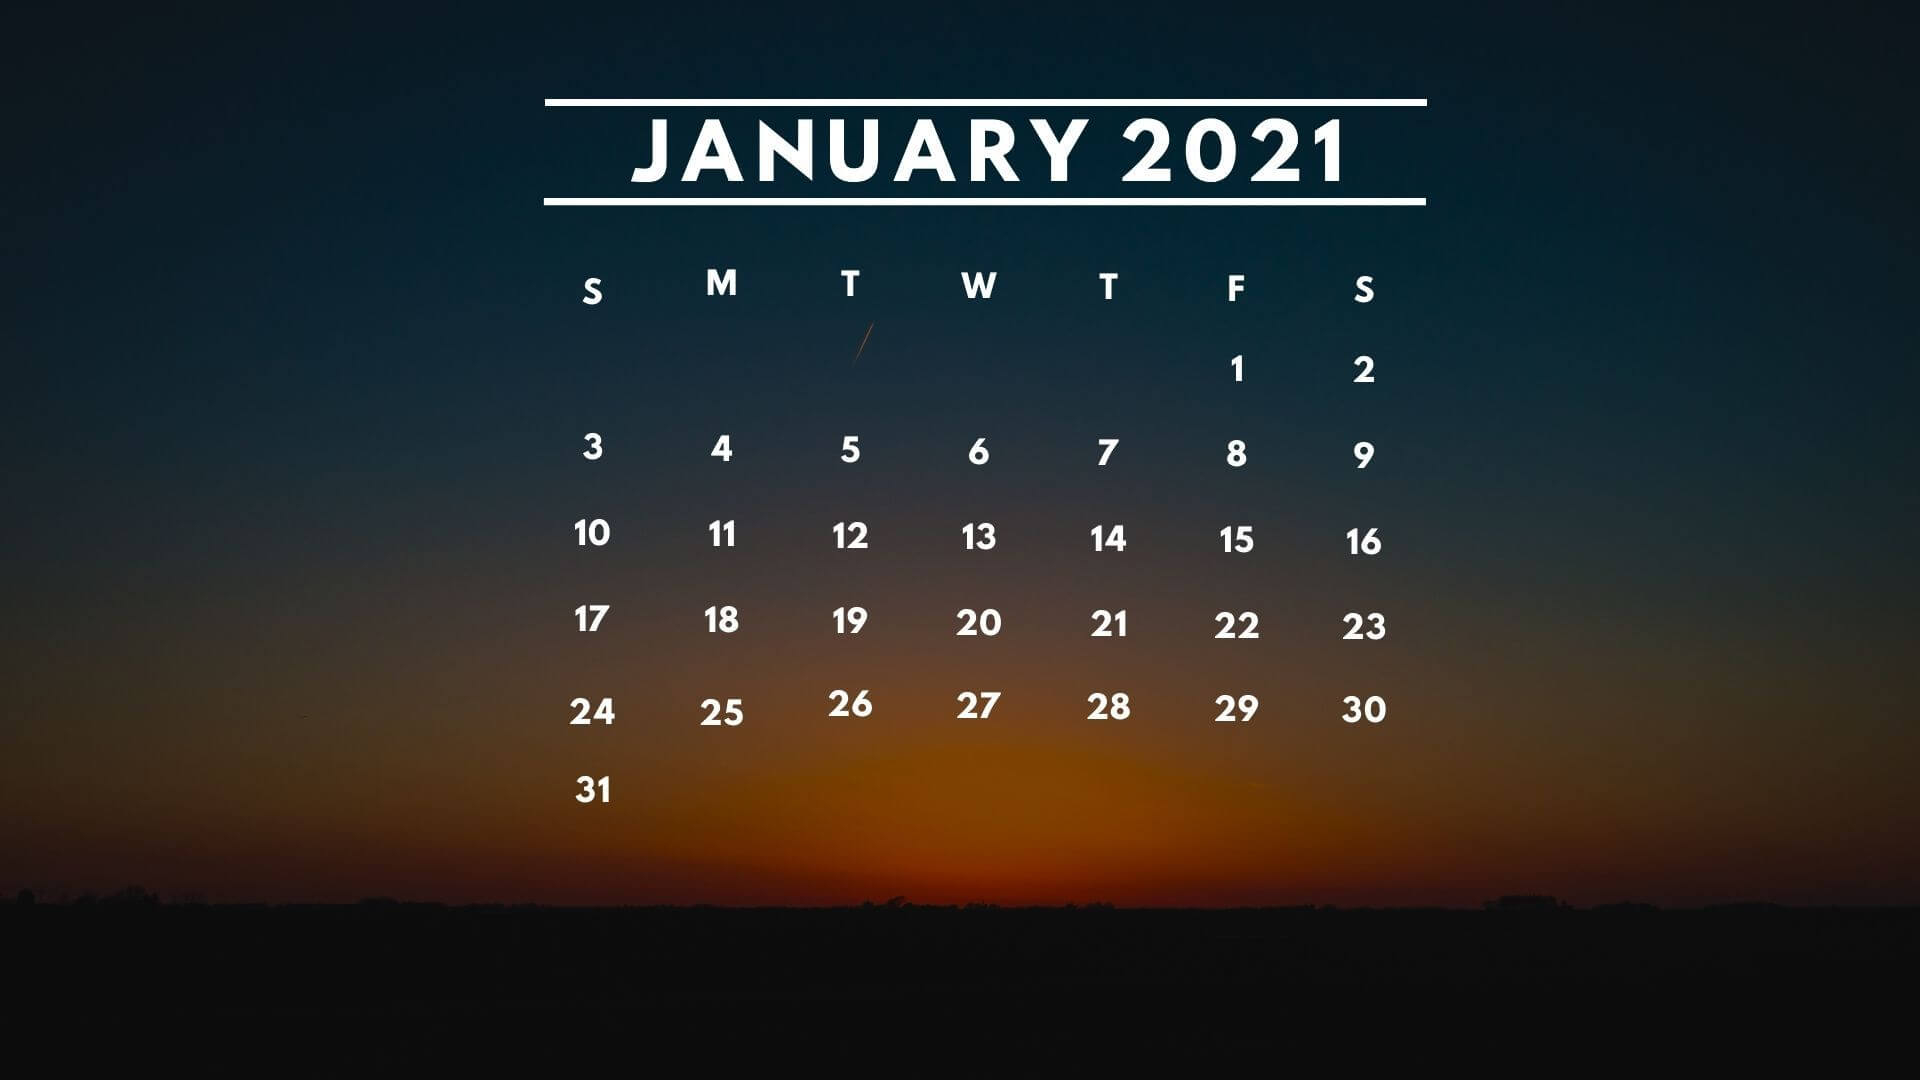 February 2021 Calendar Screensavers February 2021 Desktop Calendar